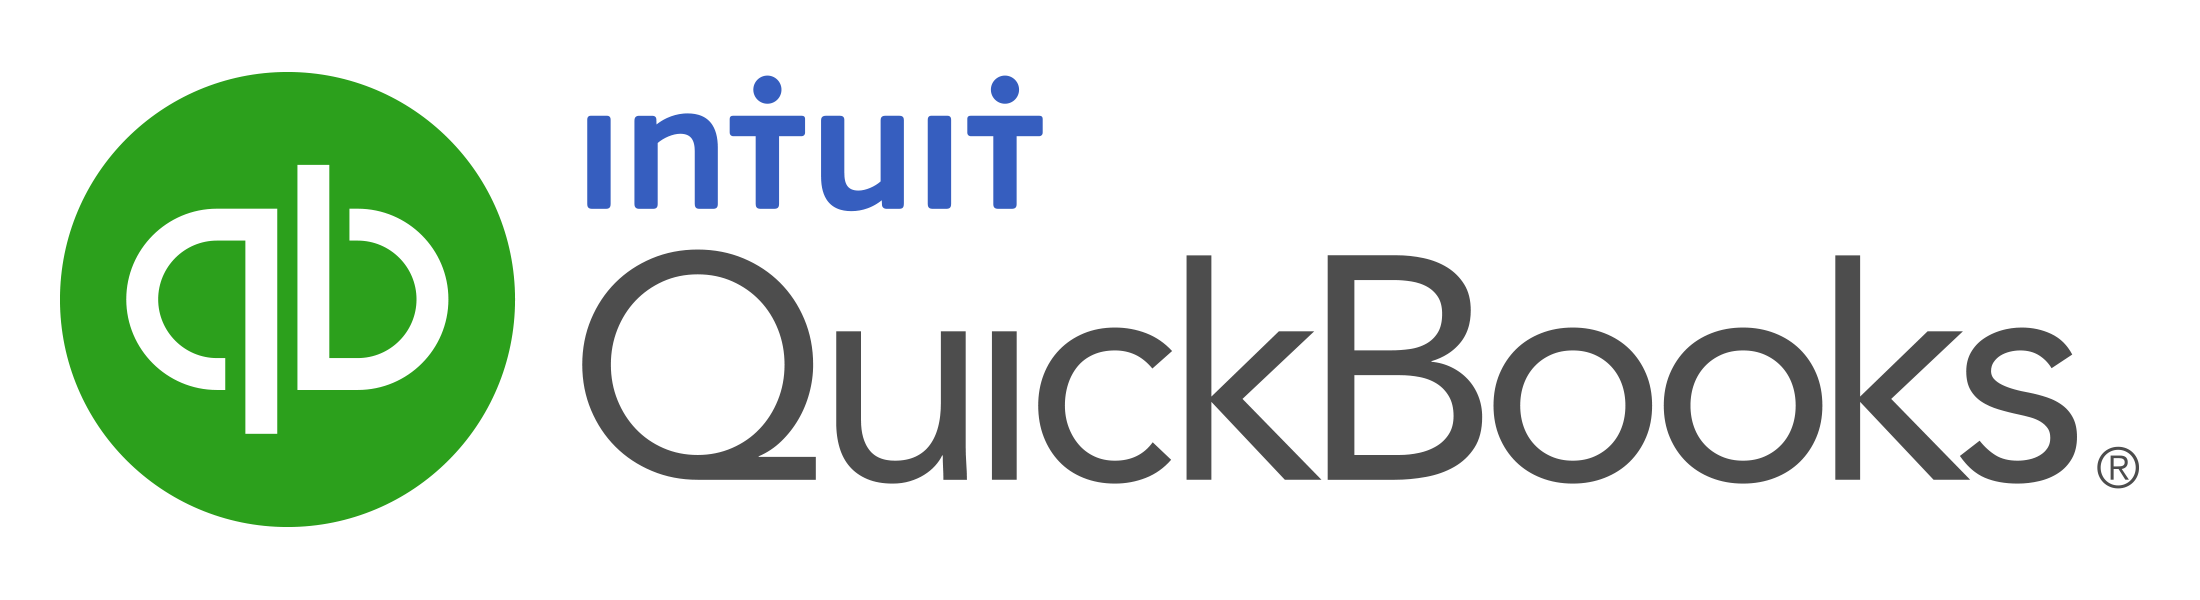 Intuit Quickbooks Logo